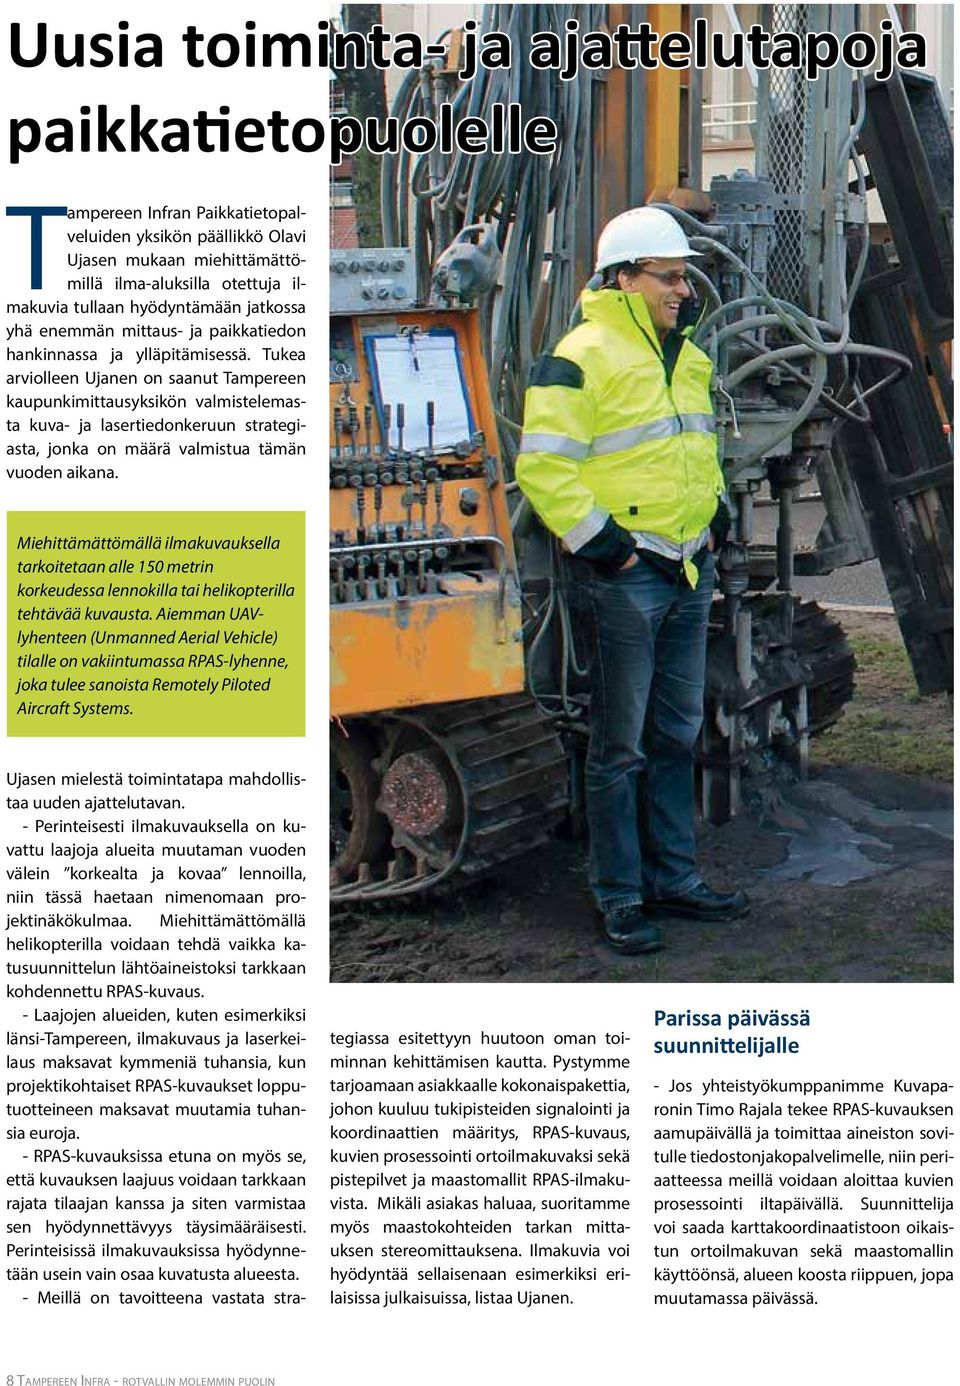 Tukea arviolleen Ujanen on saanut Tampereen kaupunkimittausyksikön valmistelemasta kuva- ja lasertiedonkeruun strategiasta, jonka on määrä valmistua tämän vuoden aikana.